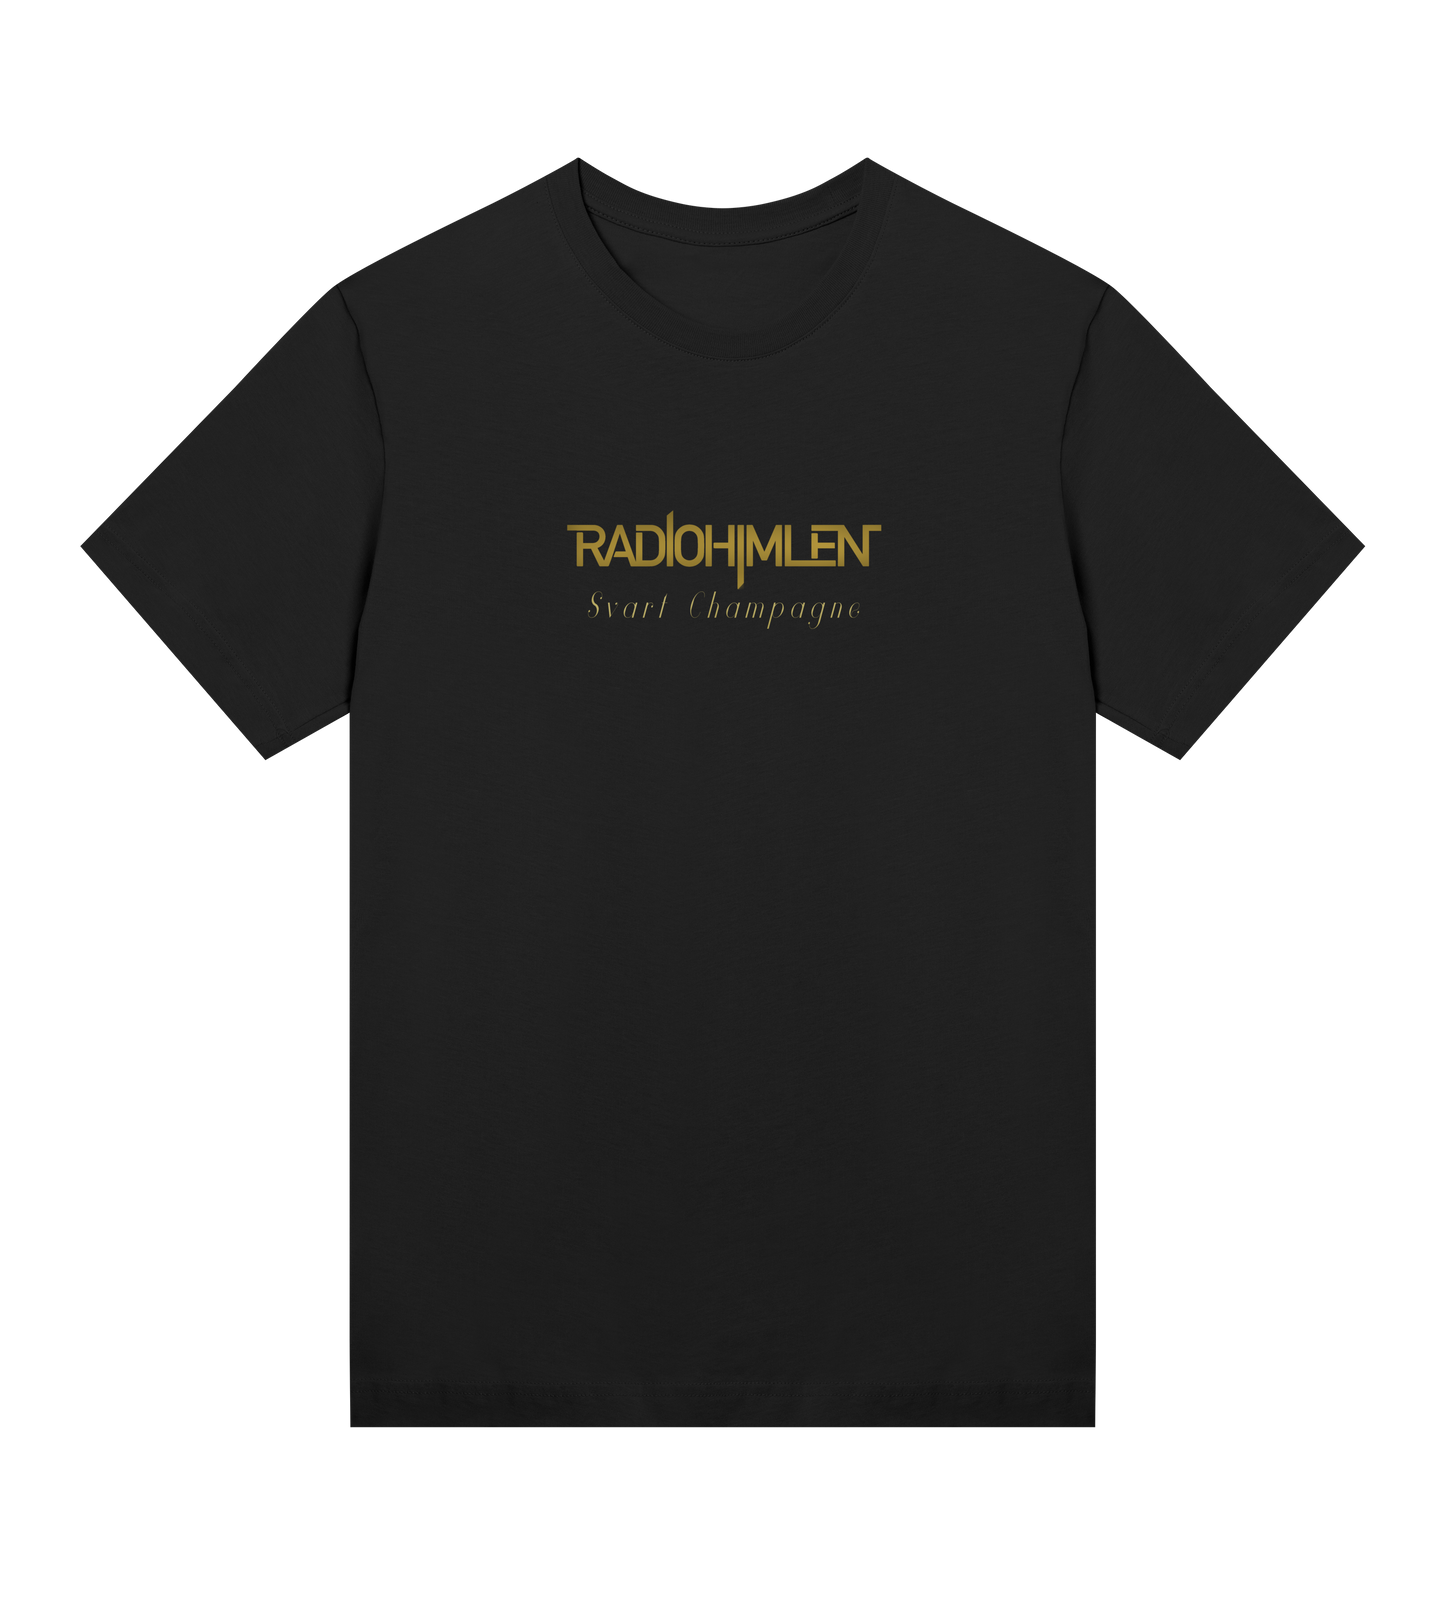 Radiohimlen "Svart Champagne" Women's T-shirt